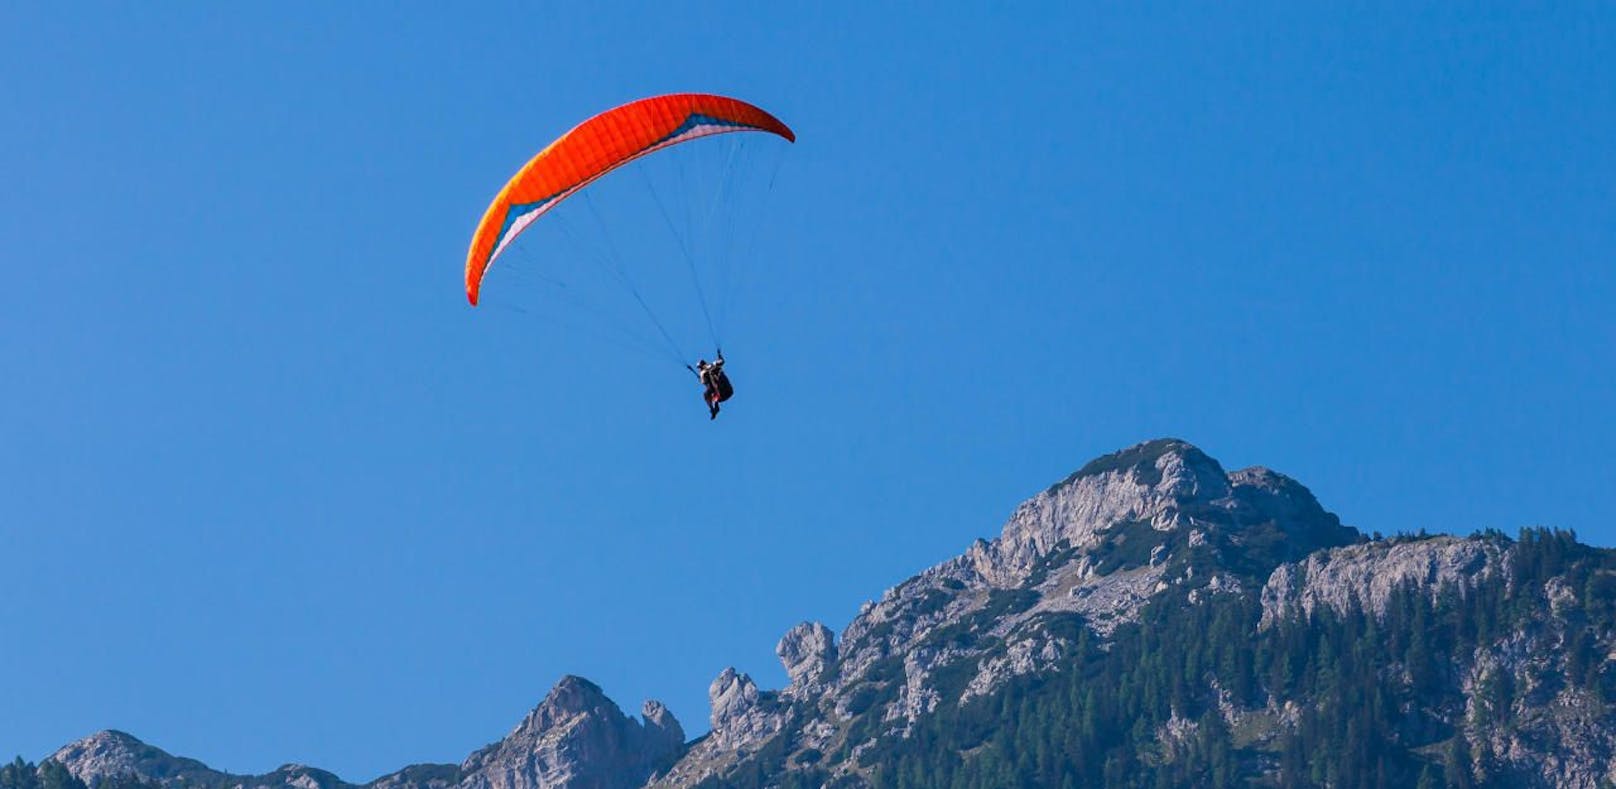 2.000 Meter Höhe – Gleitschirmflieger muss notlanden